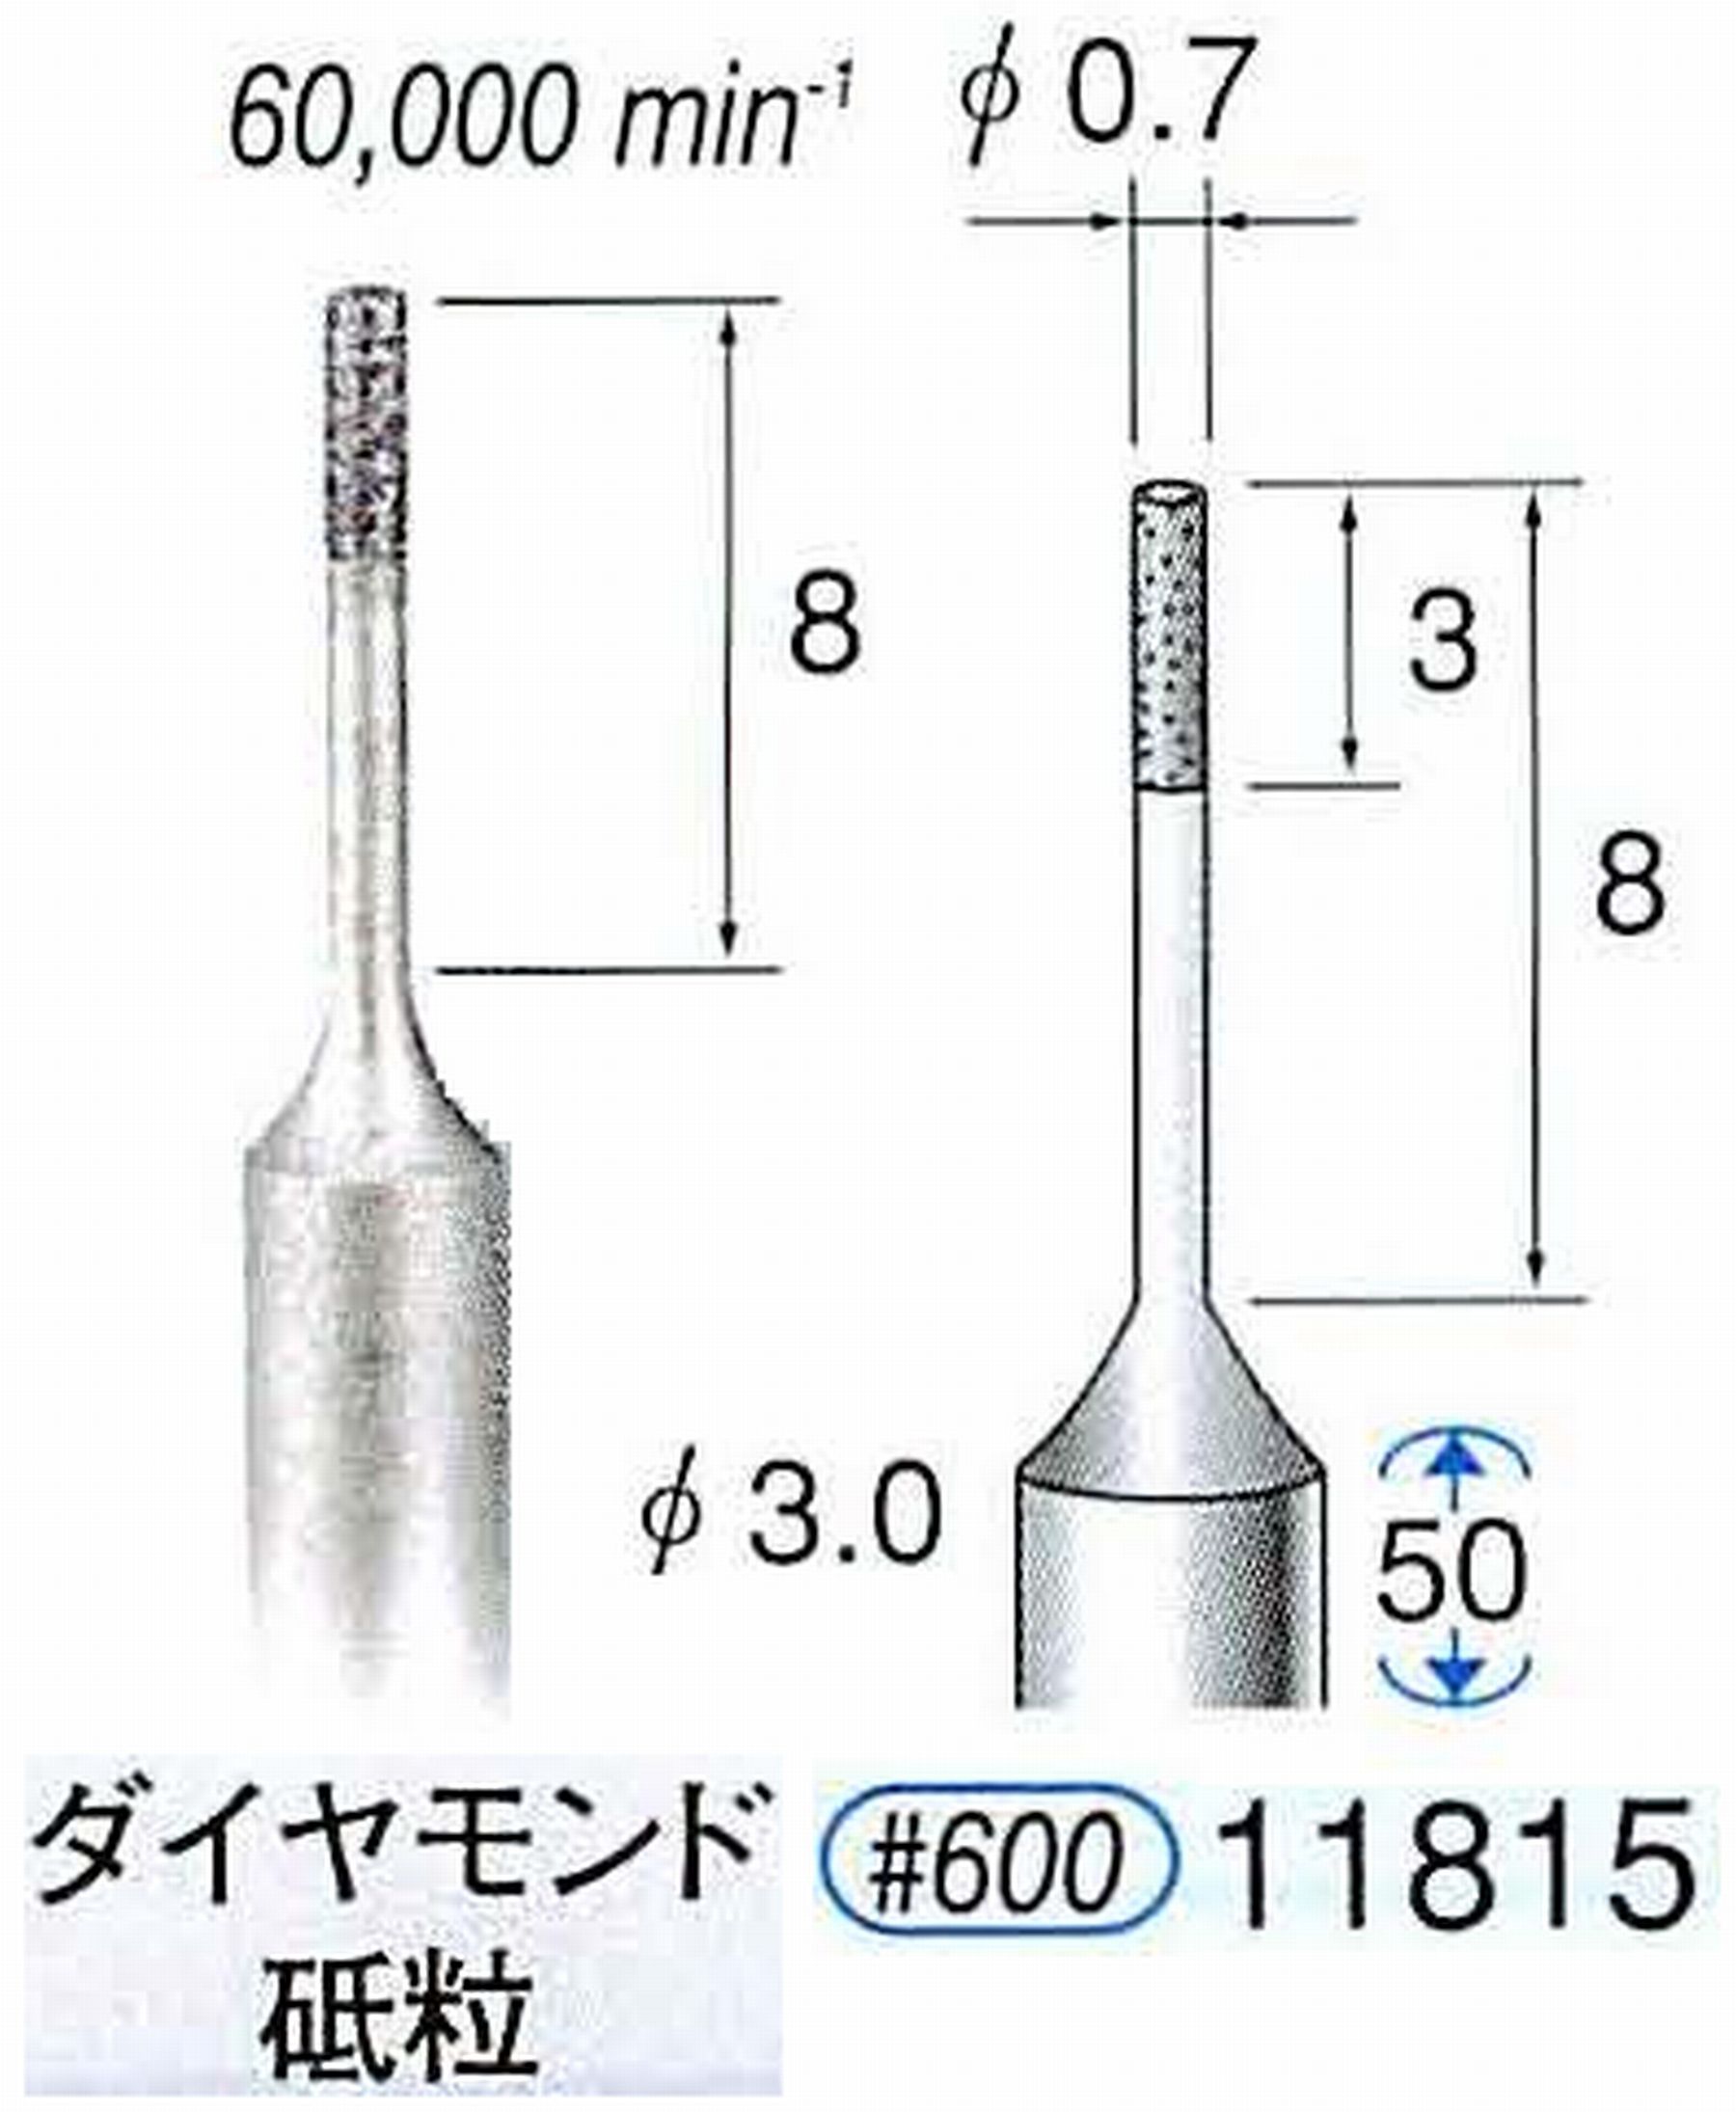 ナカニシ/NAKANISHI SP電着ダイヤモンド ダイヤモンド砥粒 軸径(シャンク)φ3.0mm 11815